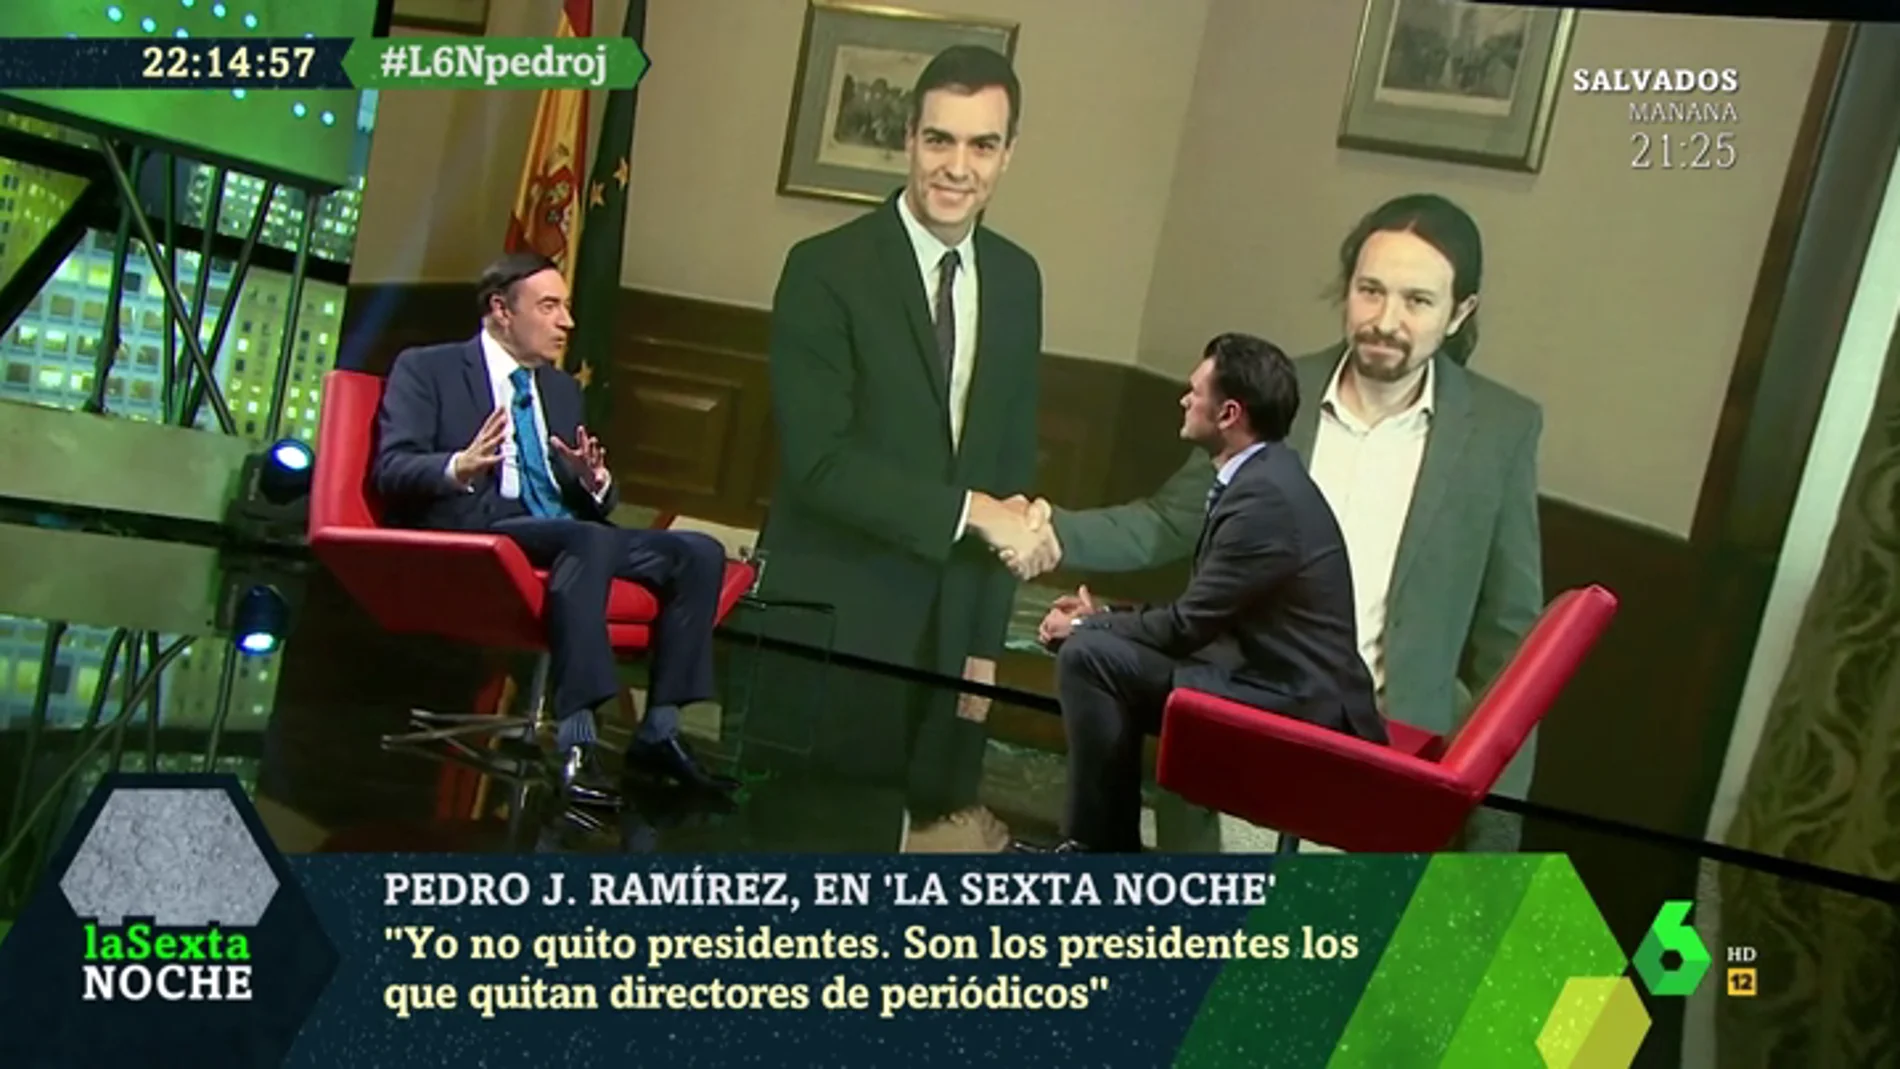 Pedro J. Ramírez: "Lo que hace dos meses no dejaba dormir a Sánchez hoy es 'imprescindible'"